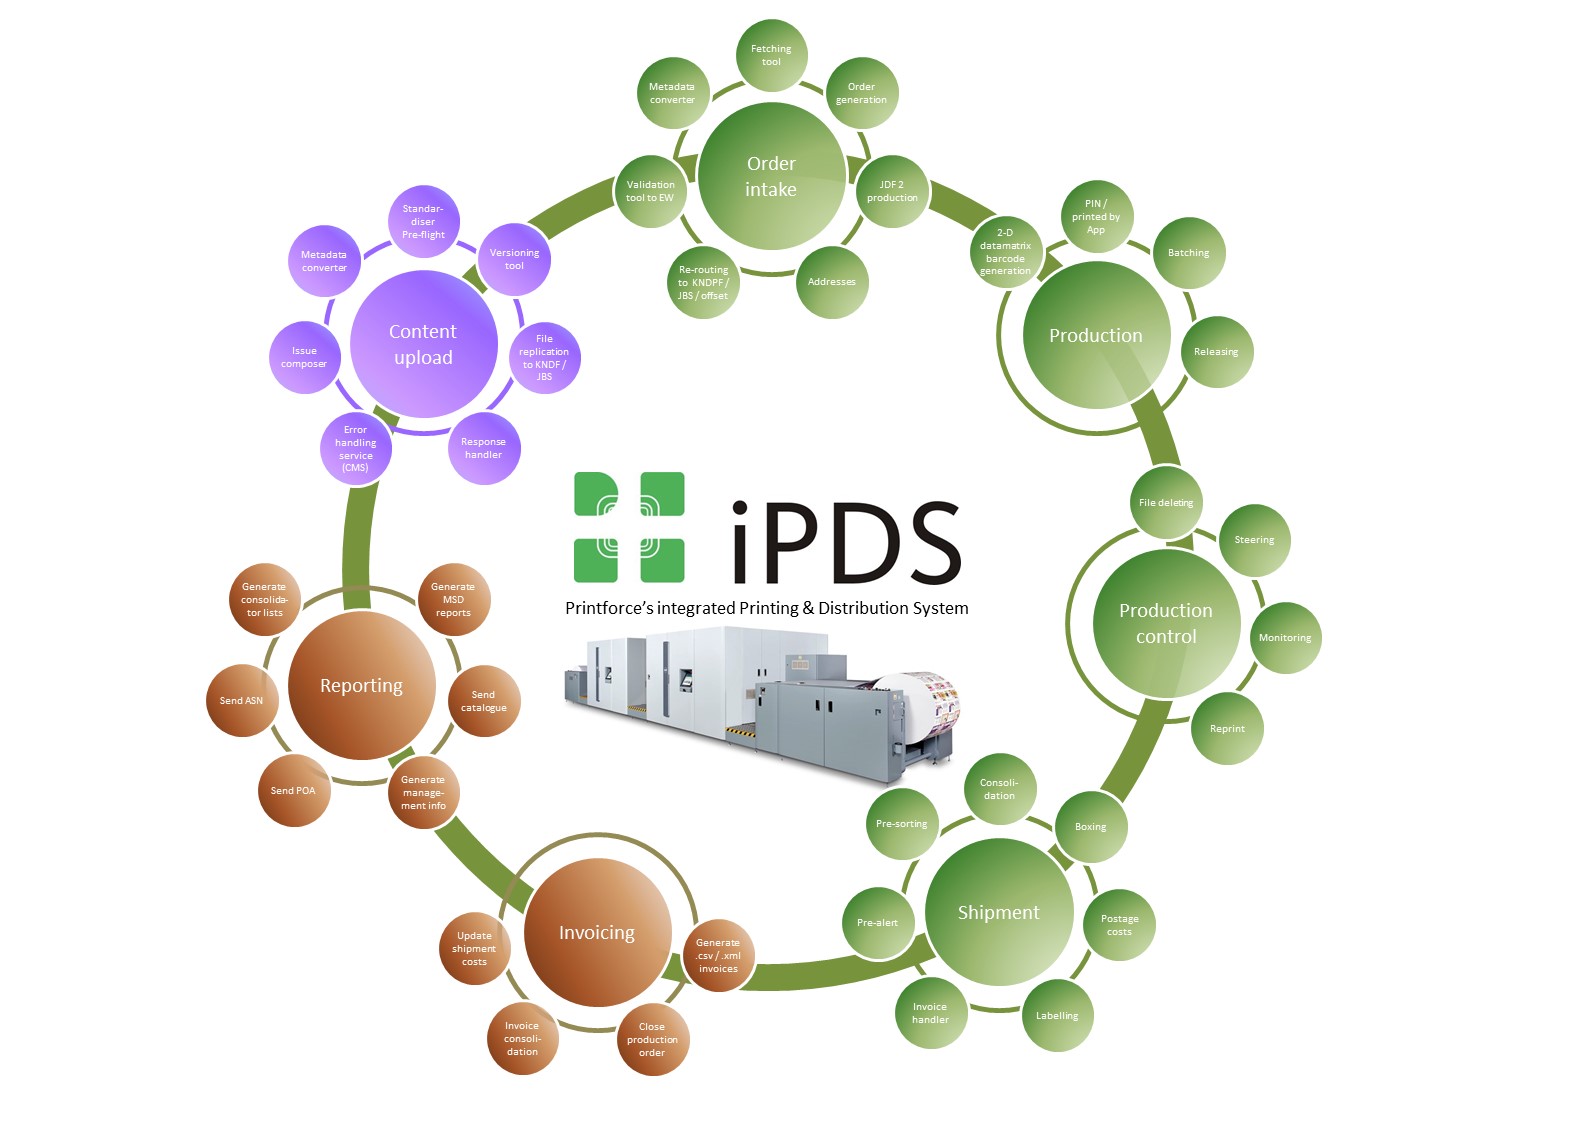 iPDS workflow diagram II